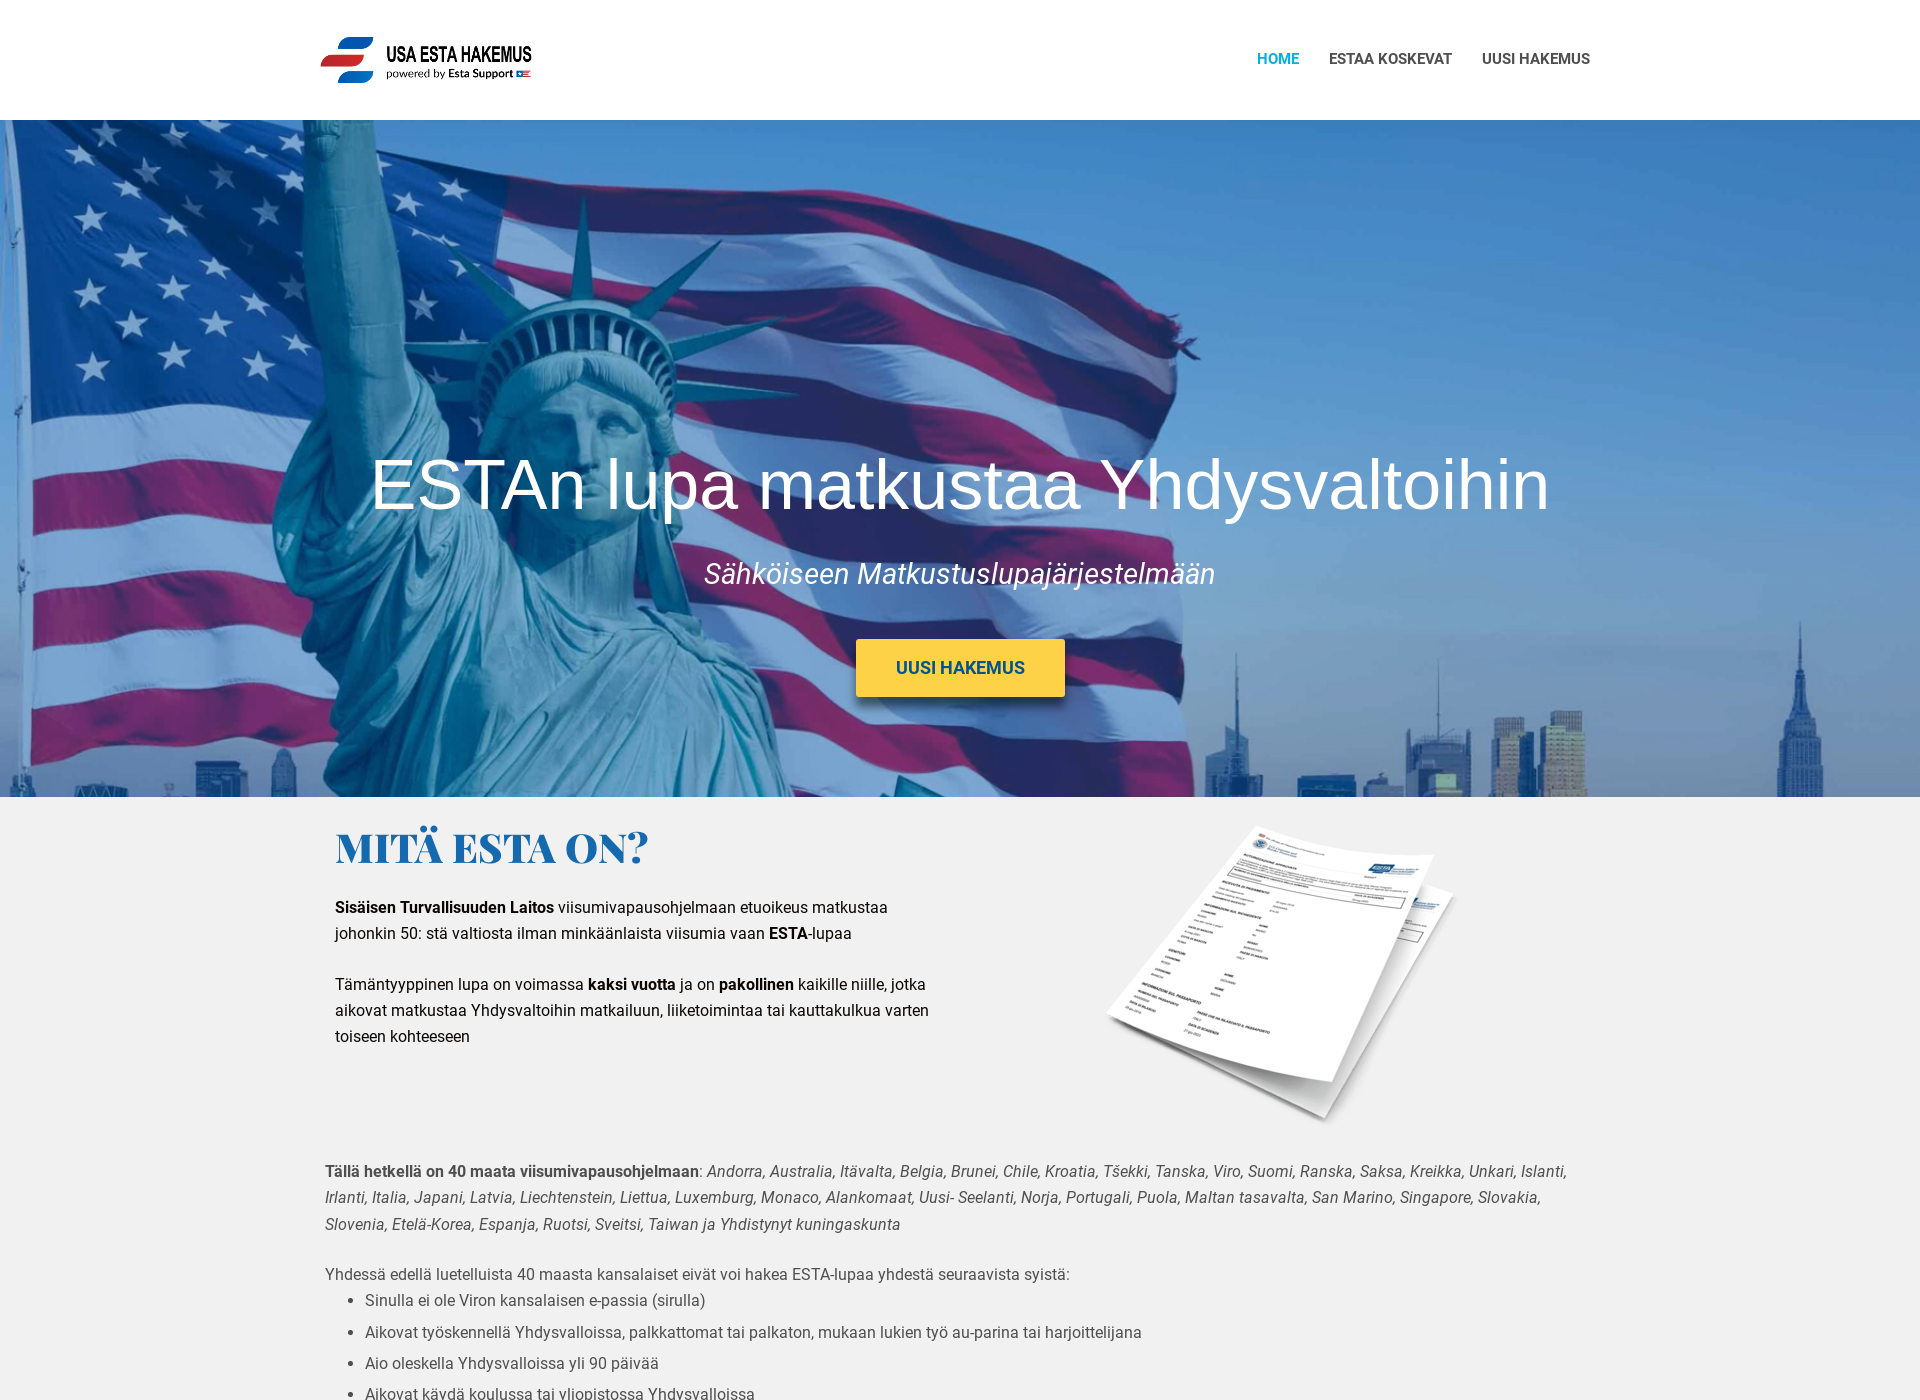 Screenshot for usaestahakemus.fi